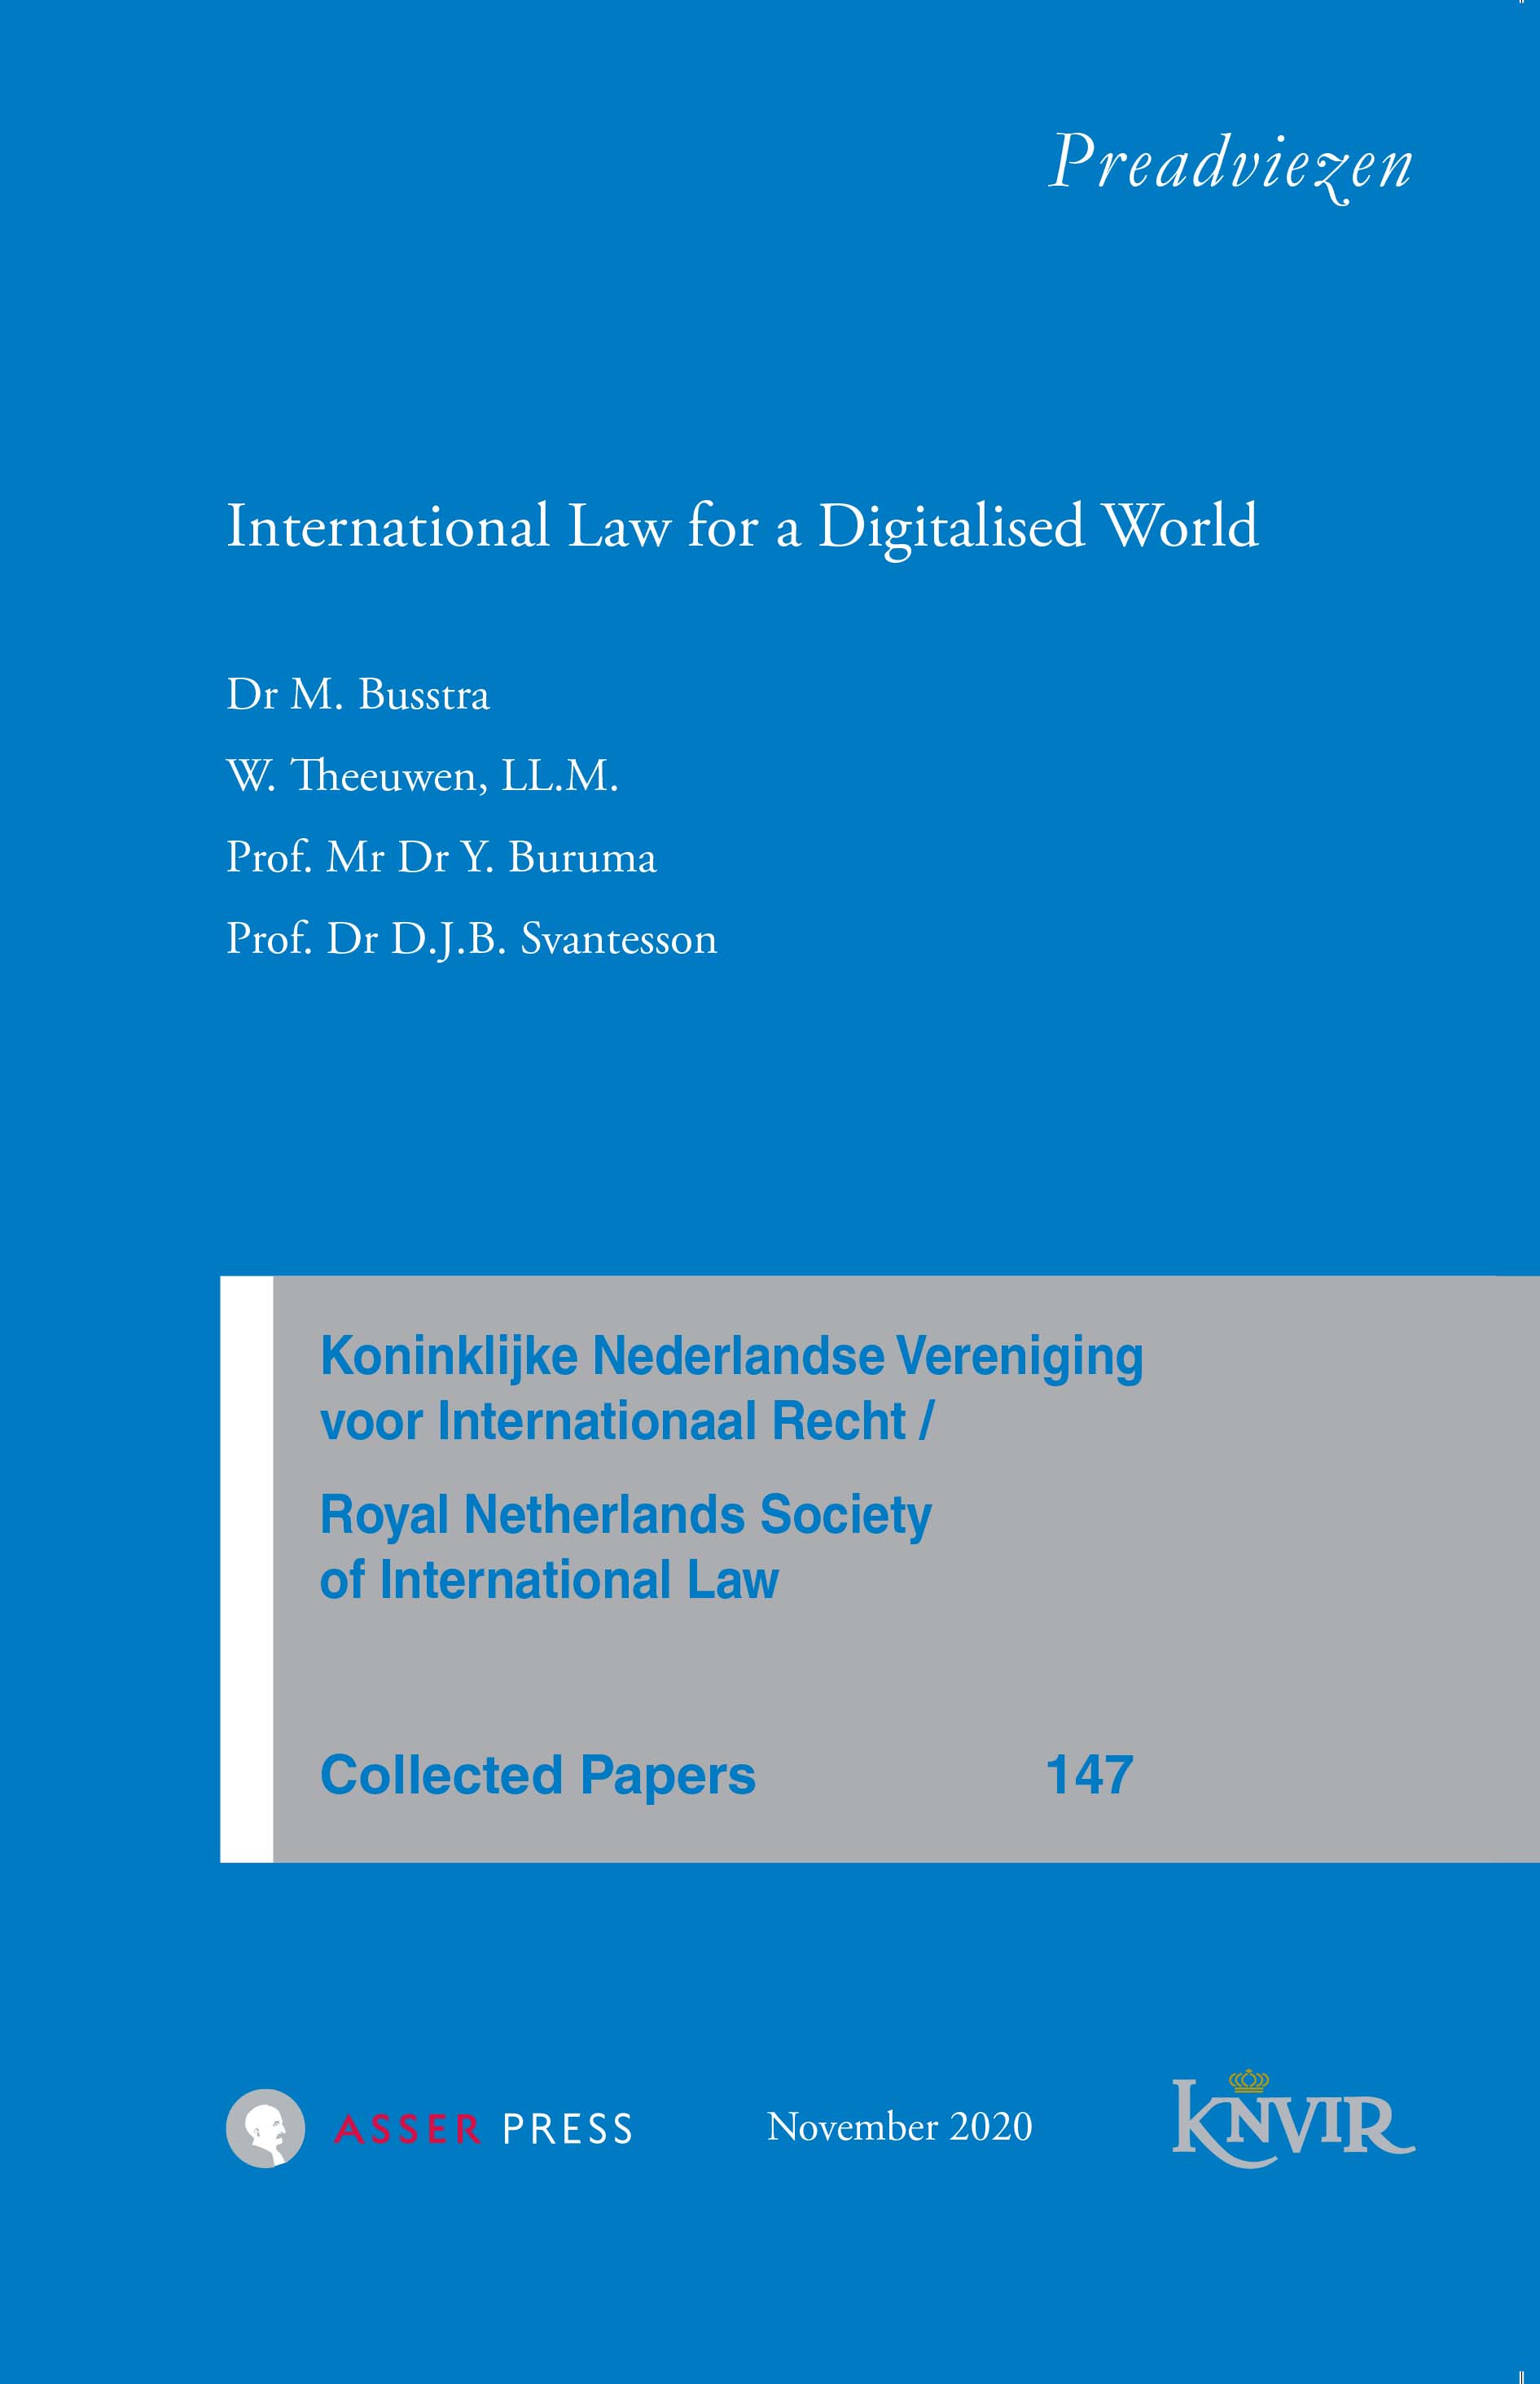 Collected Papers van de Koninklijke Nederlandse Vereniging voor Internationaal Recht - nr 147 - International Law for a Digitalised World